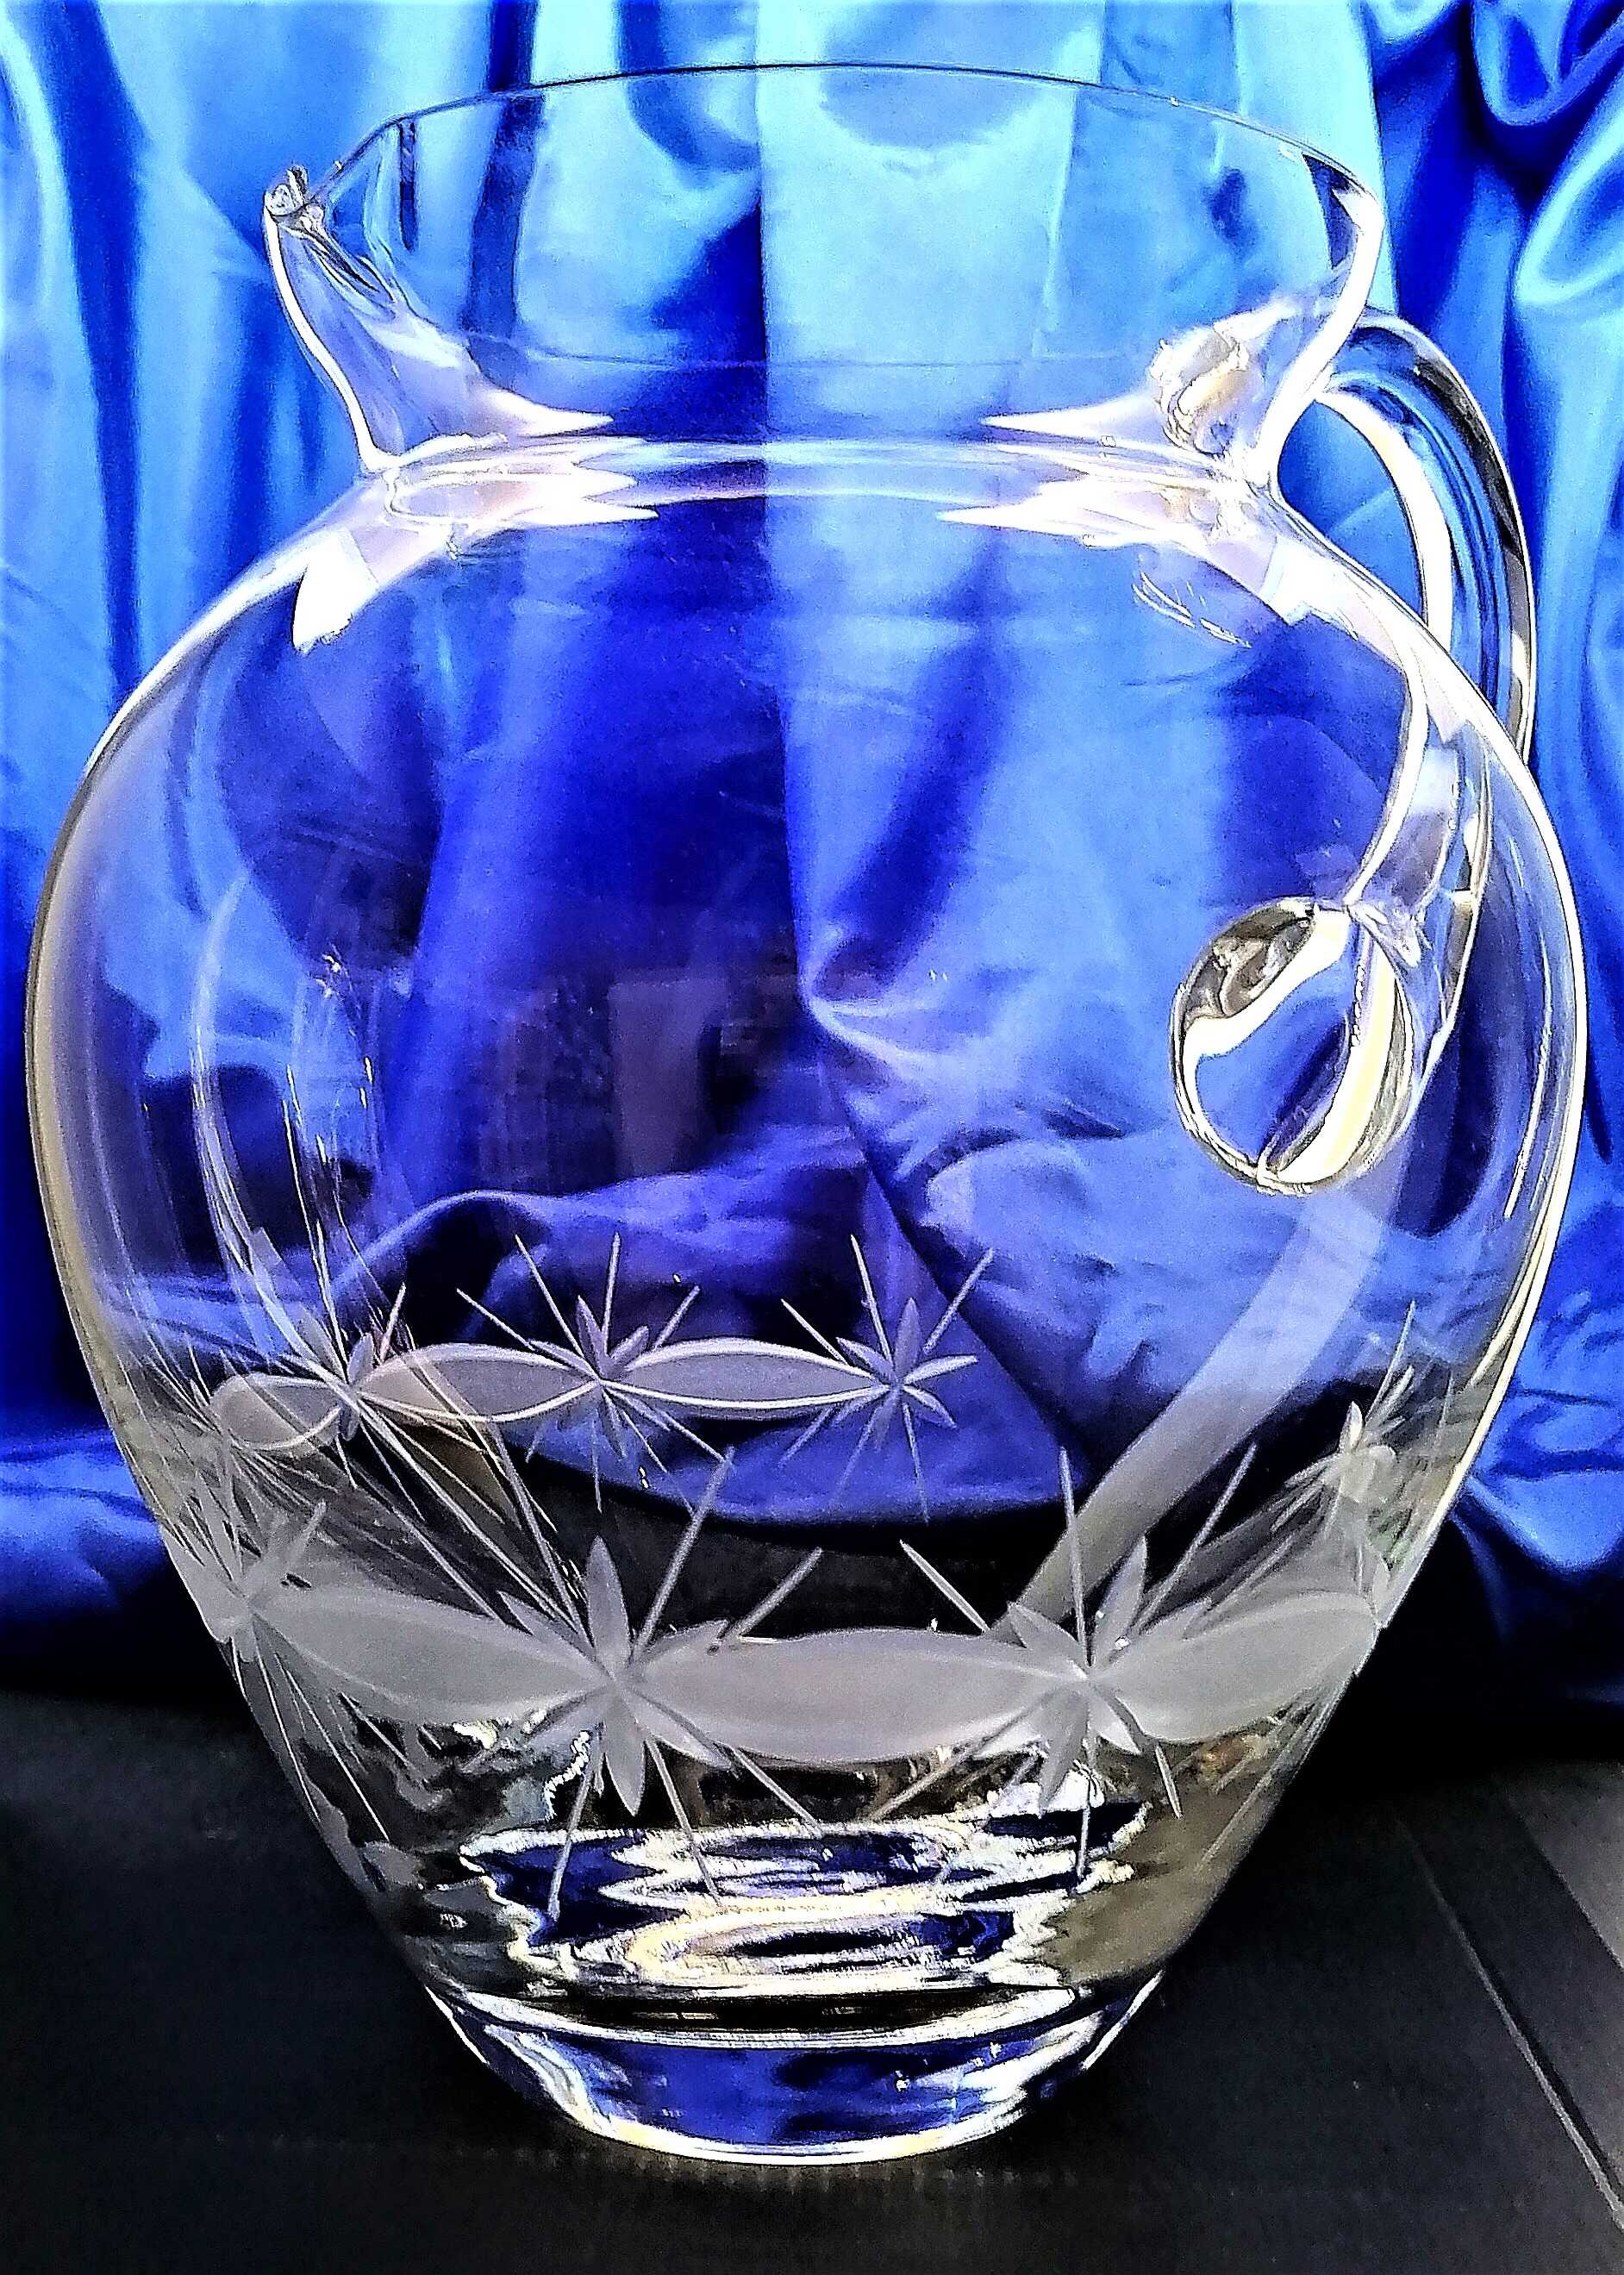 LsG-Crystal Džbán skleněný ručně broušený dekor Kanta KR-089 251 x 180 mm 2000 ml 1 Ks.